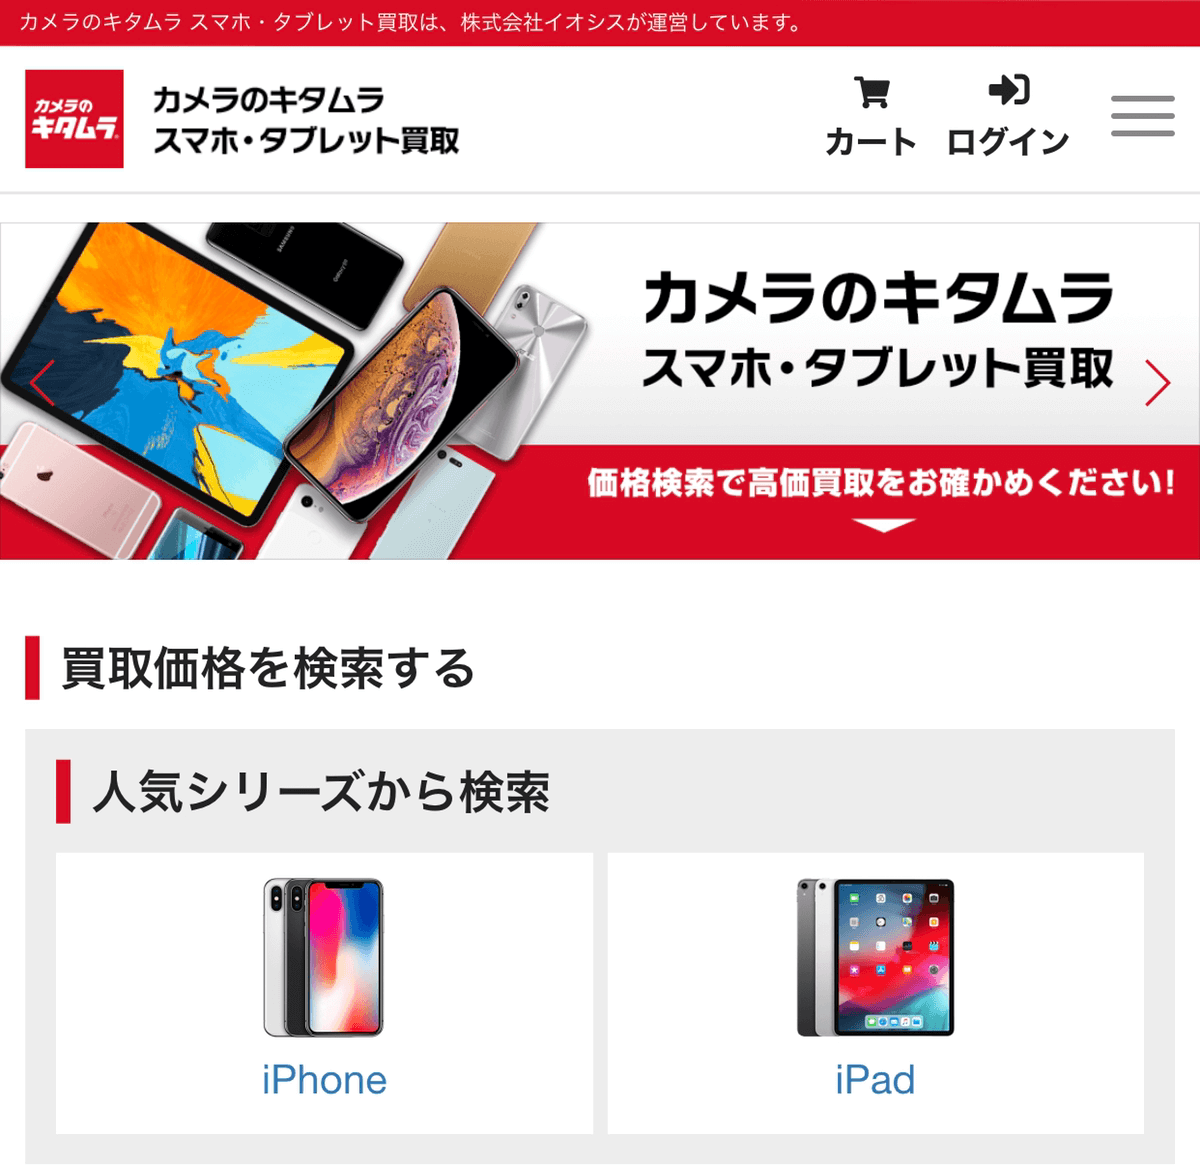 キタムラのiPhone買取サービス